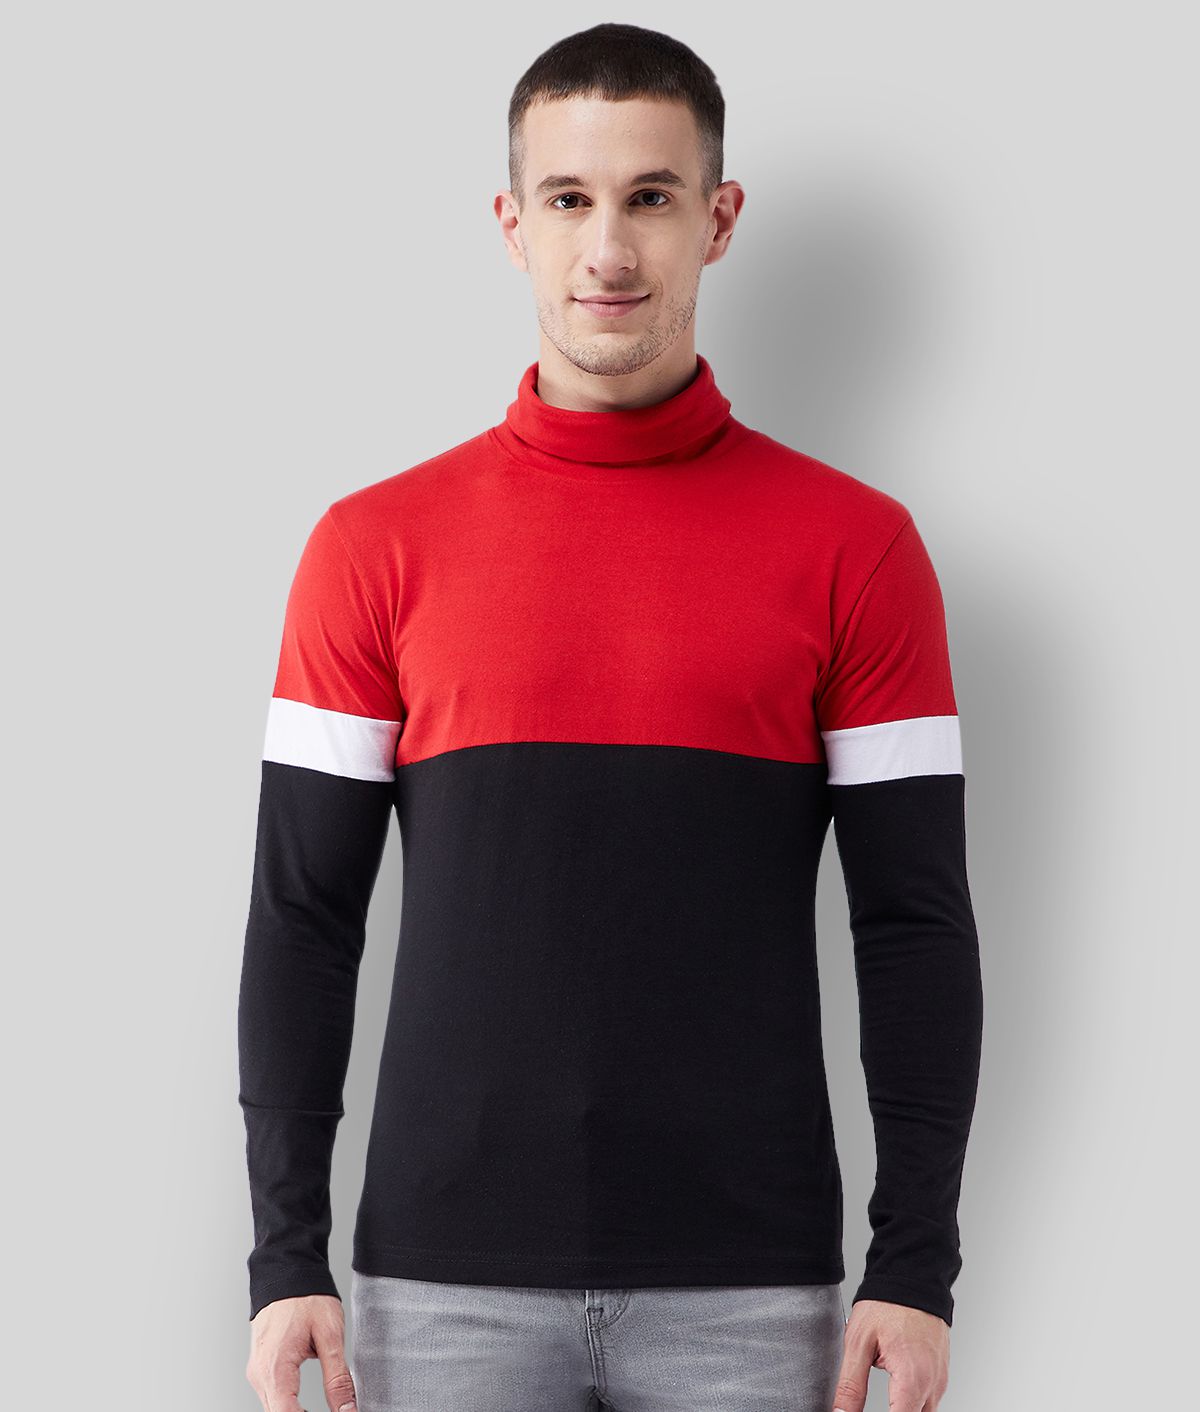 Gritstones - Red Cotton Blend Regular Fit Men's T-Shirt ( Pack of 1 )